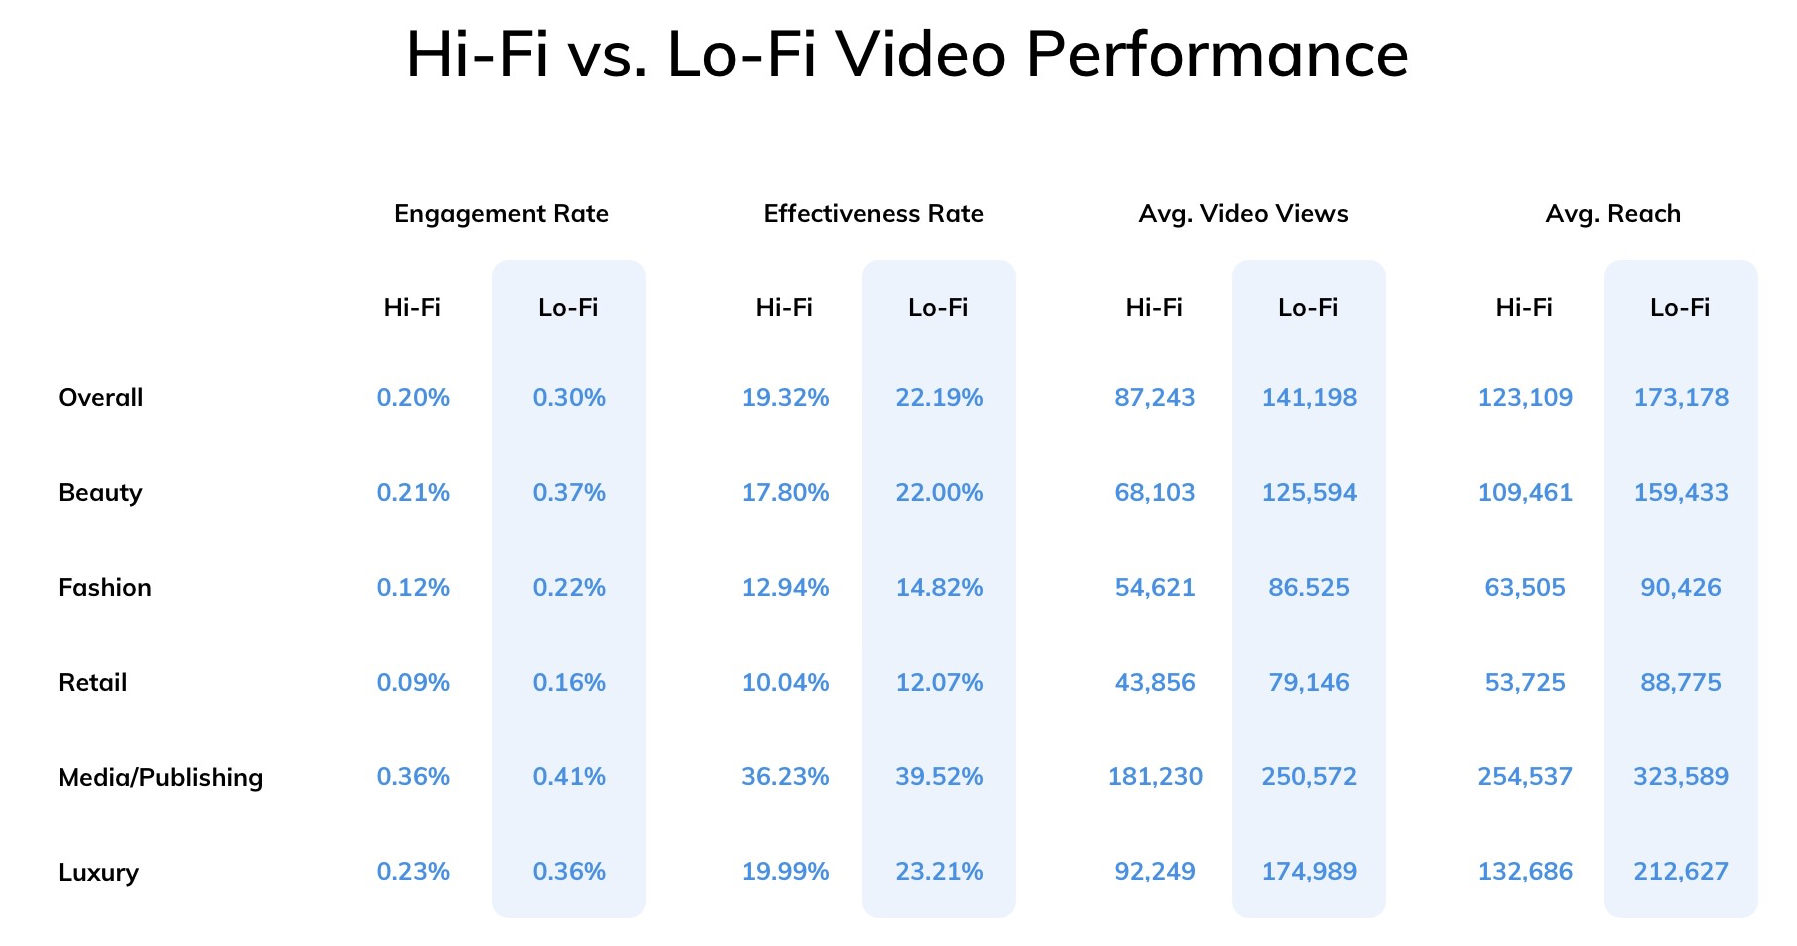 Comparaison des performances vidéo Lo-Fi et Hi-Fi dans les différents secteurs d'activité @DashHudson